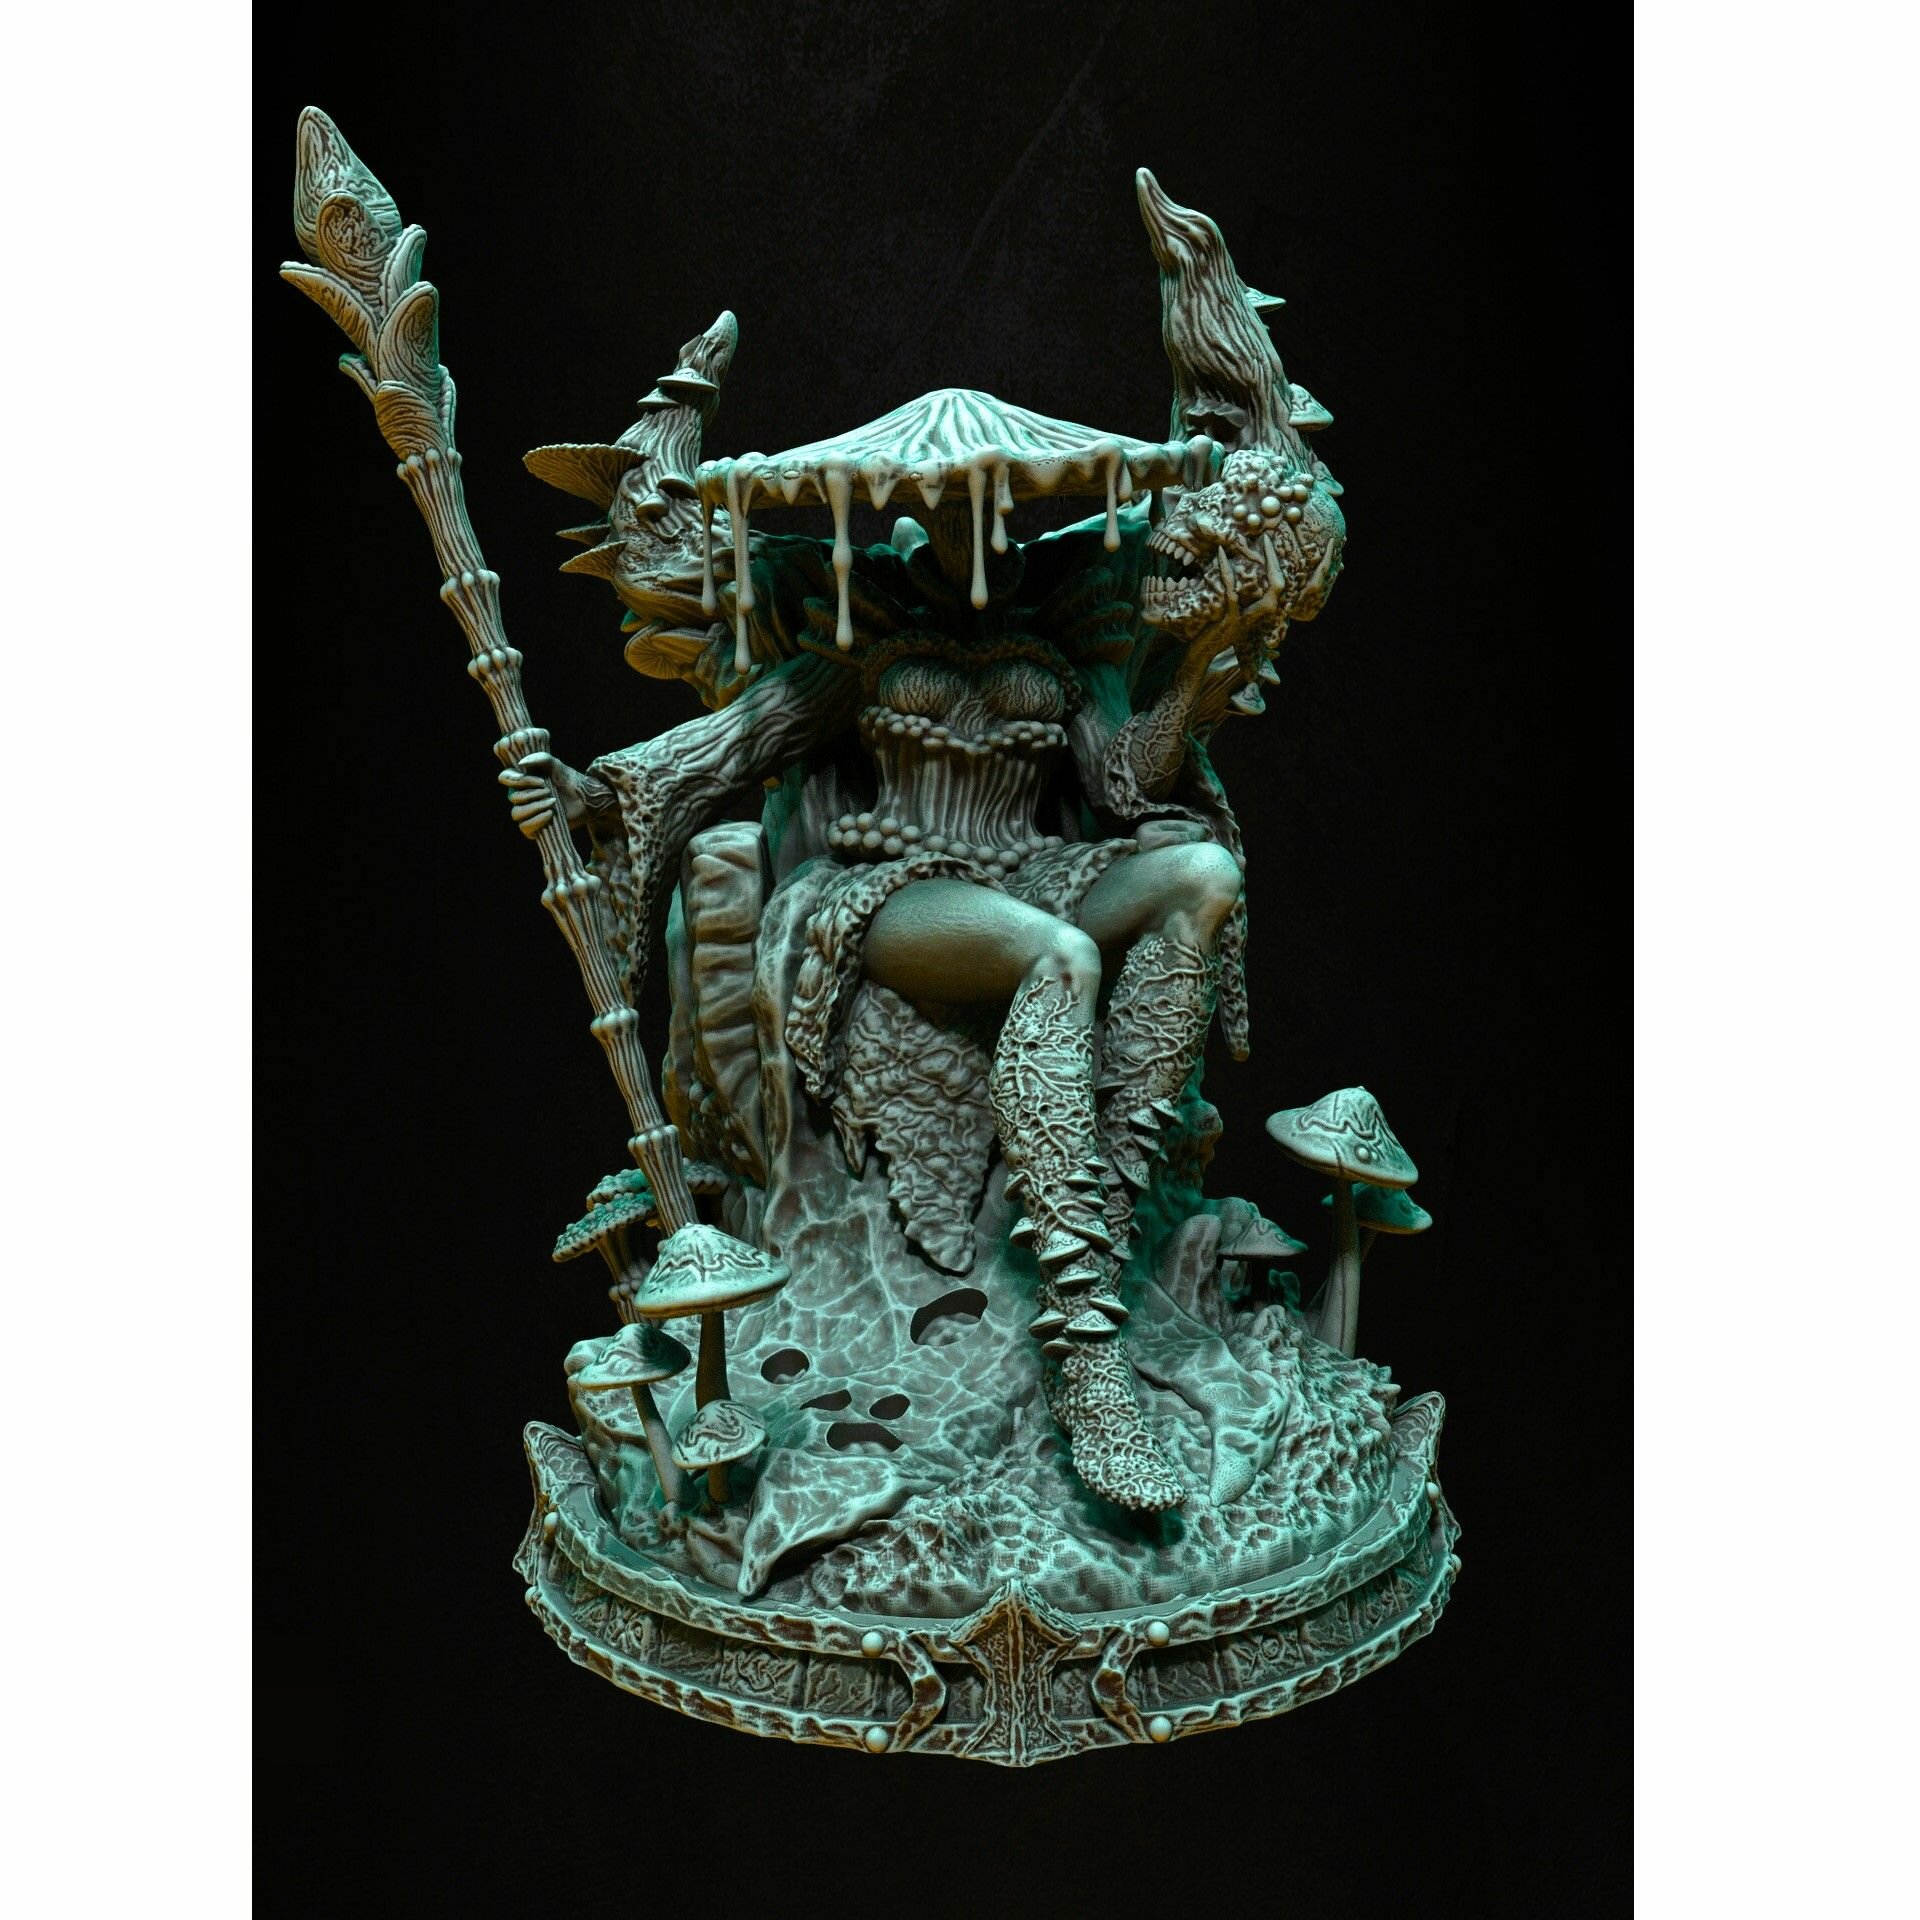 Fantasy большая фигурка Fungal Queen (Грибная королева) 3д миниатюра для раскрашивания (высота 110 мм) база 75мм